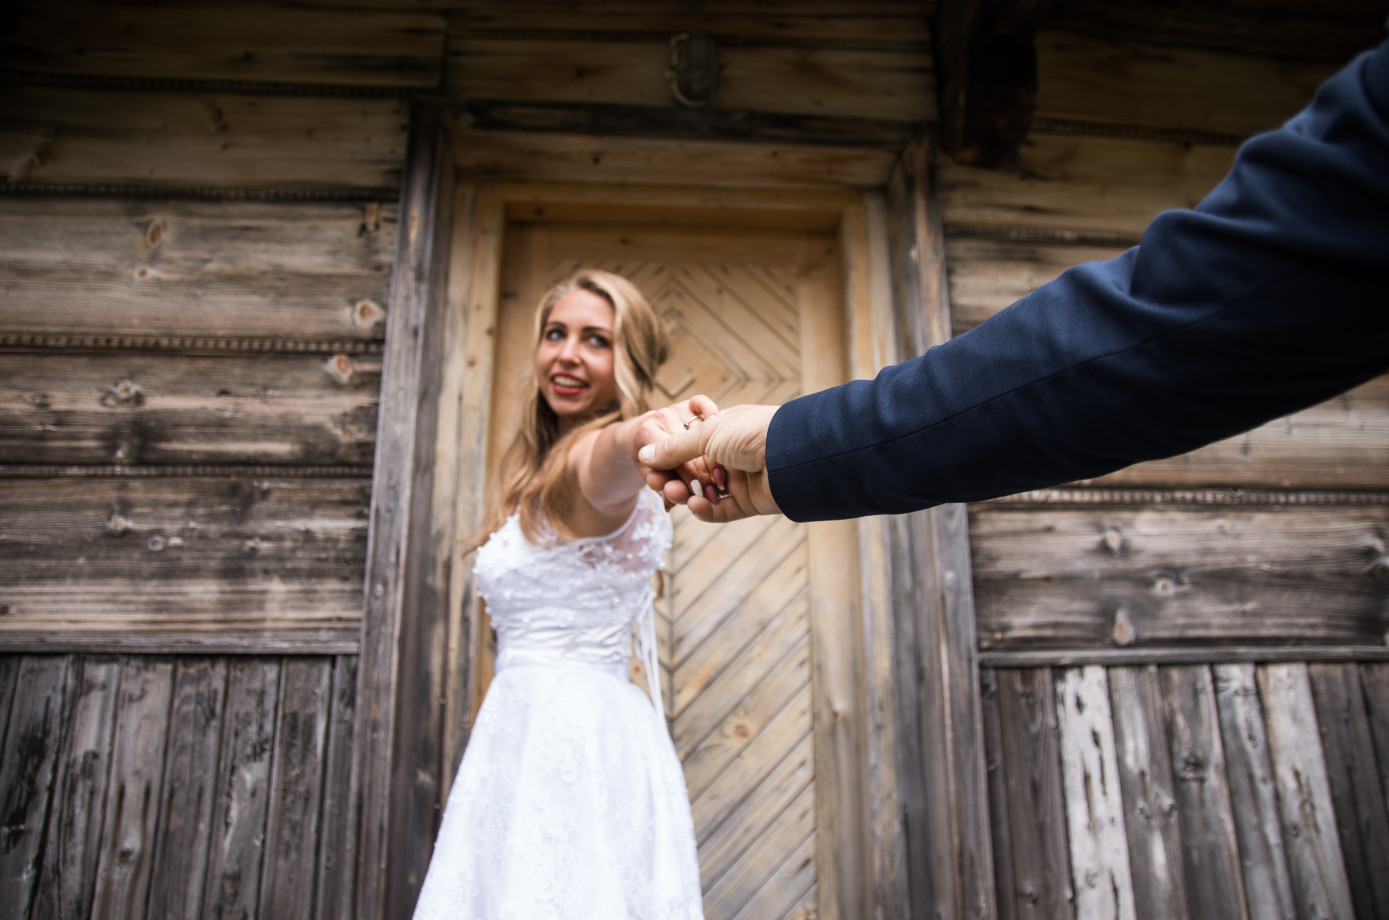 zdjęcia poznan fotograf krawczynscy-pracownia-fotograficzna portfolio zdjecia slubne inspiracje wesele plener slubny sesja slubna